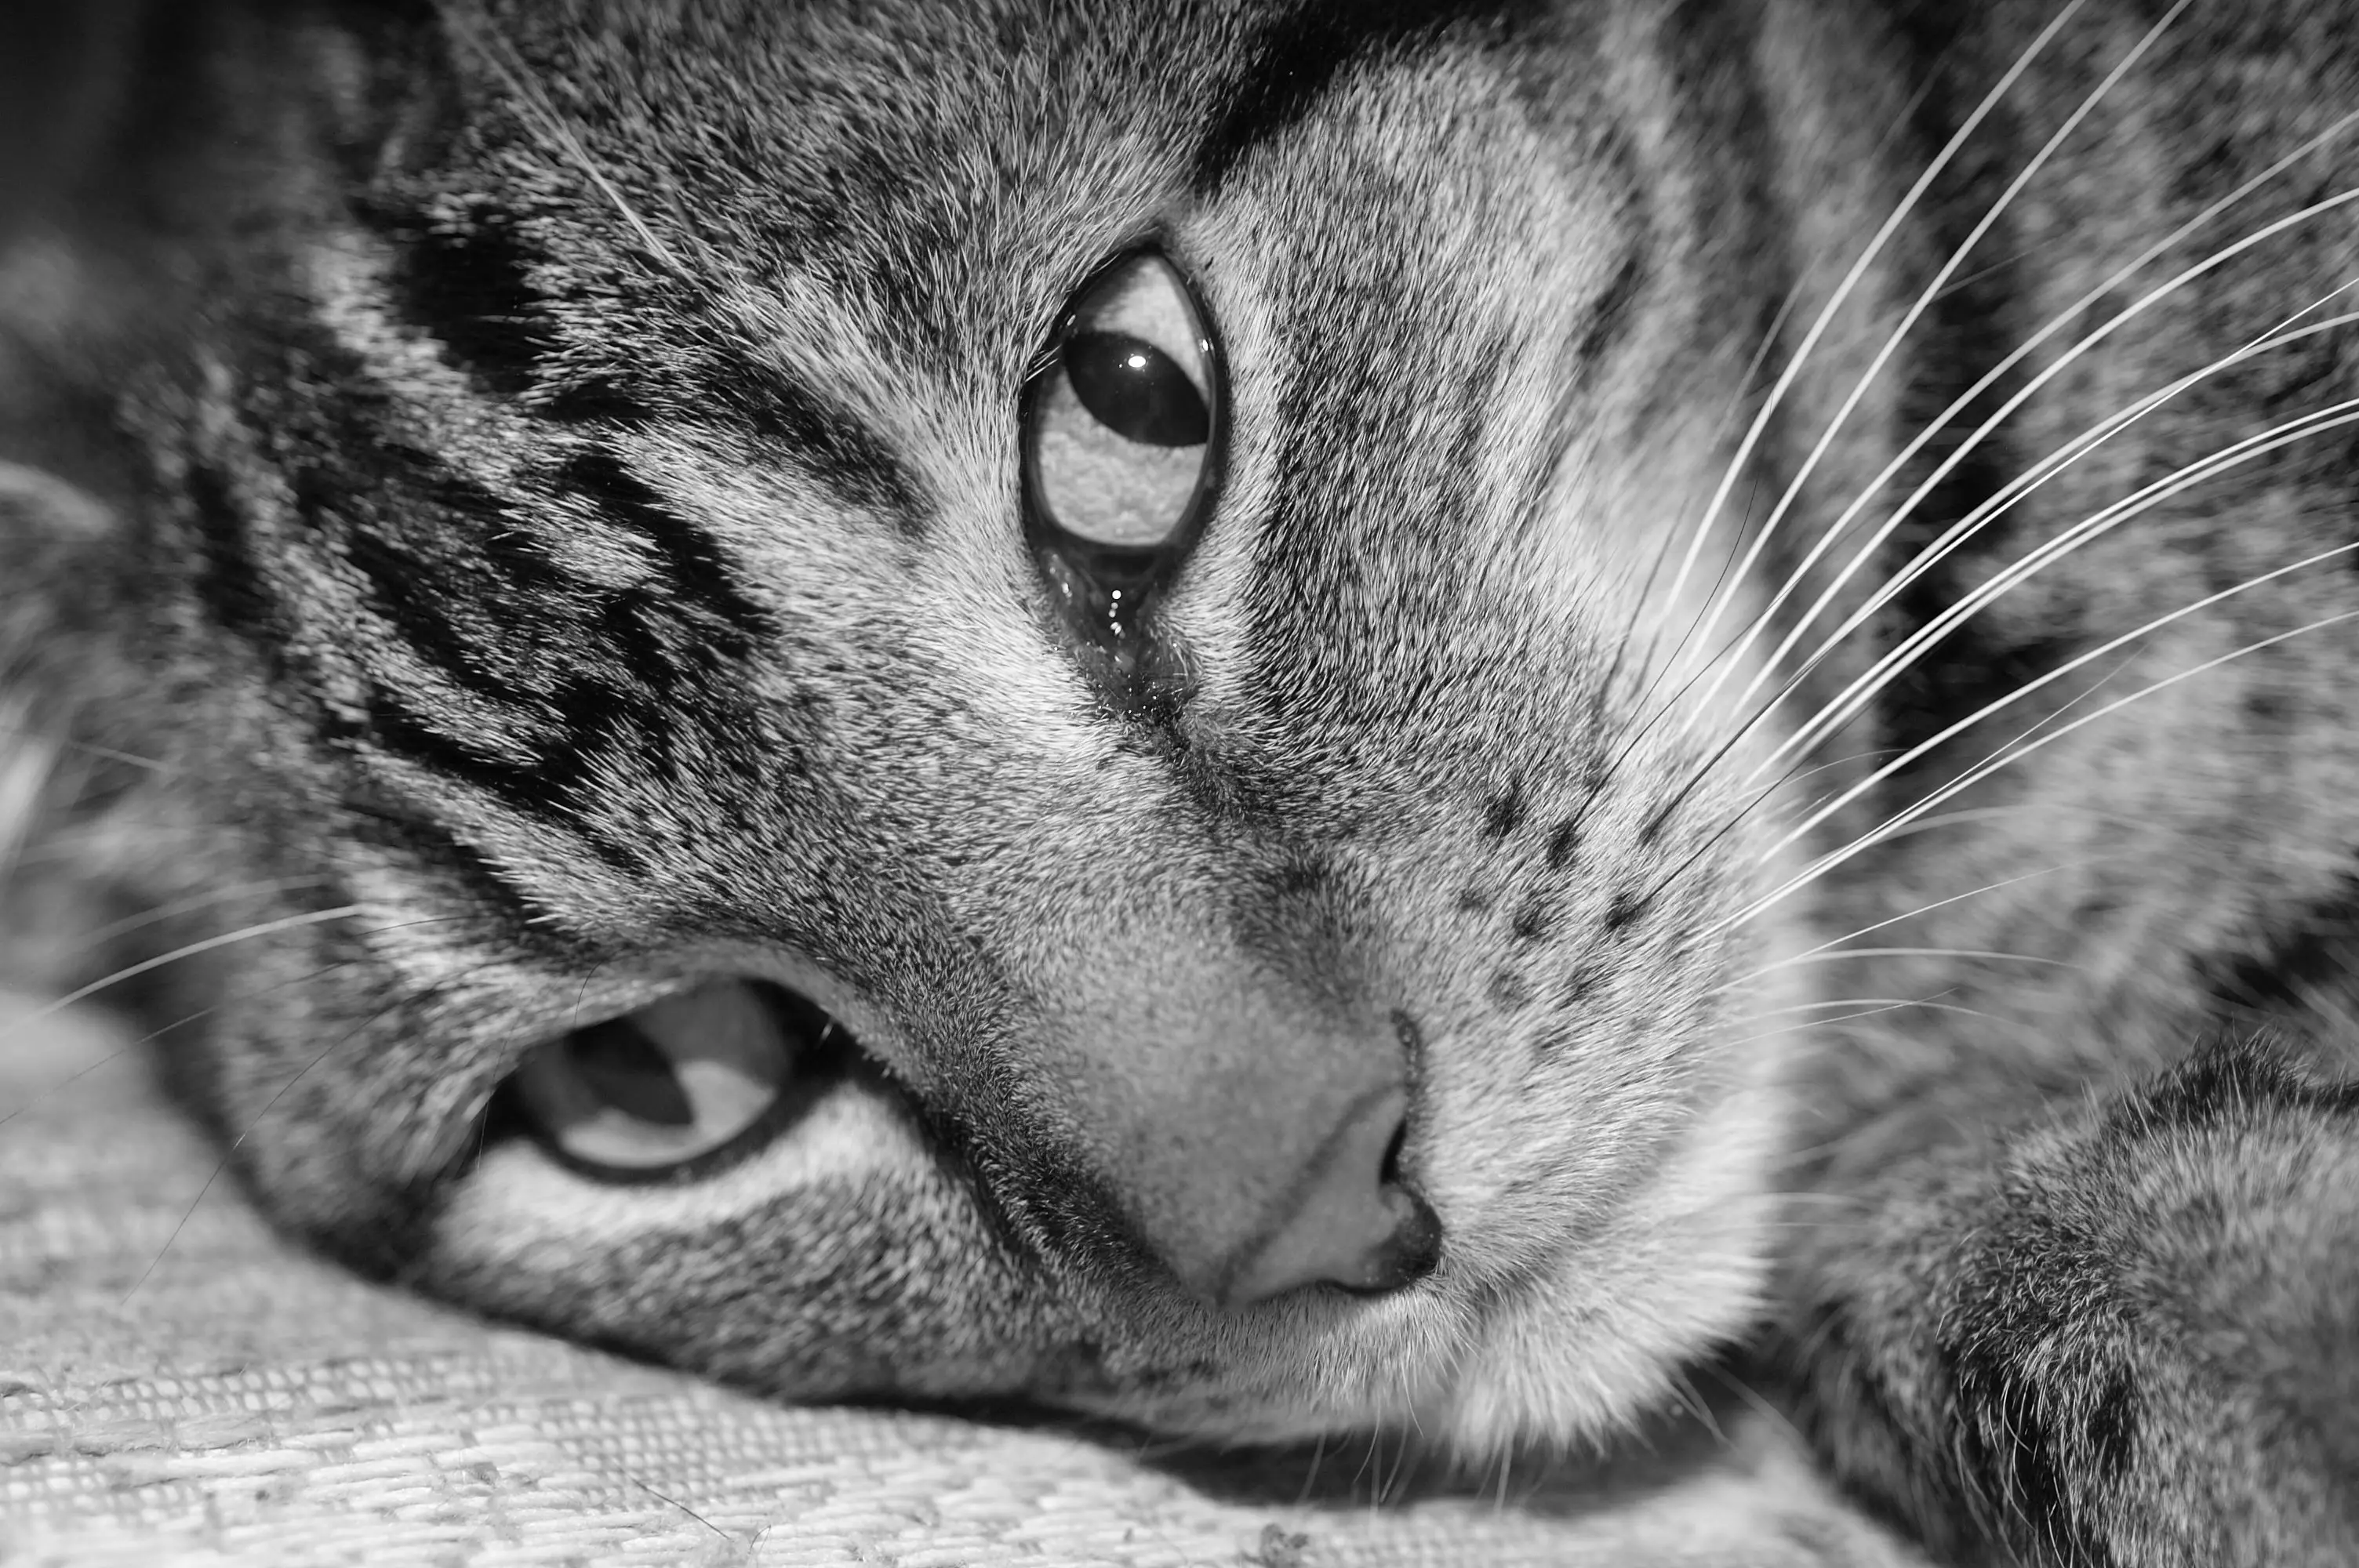 Uma imagem em preto e branco de um gato malhado